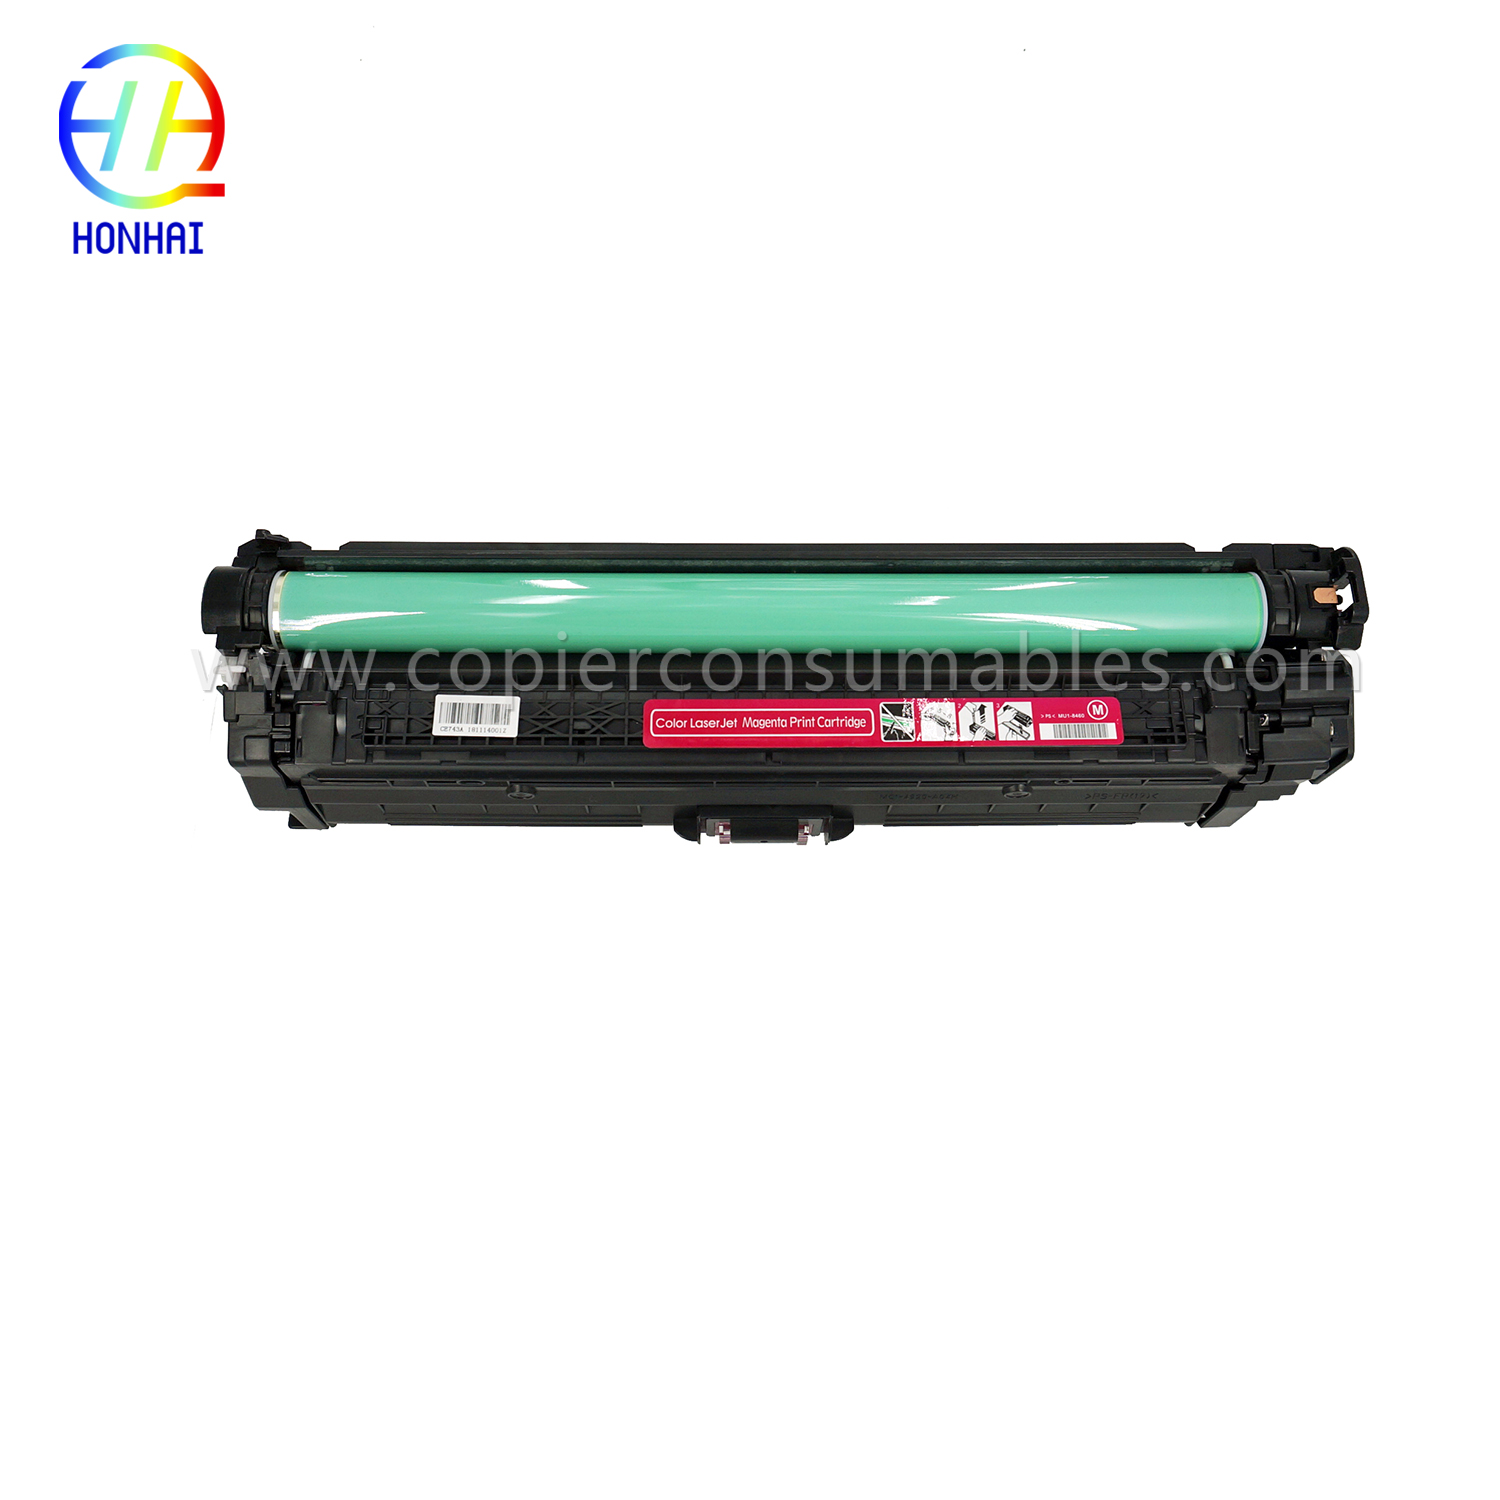 Toner Cartridge HP Colour LaserJet Pro CP5025 CP5220 CP5225 (CE743A 307A) (4) 拷贝